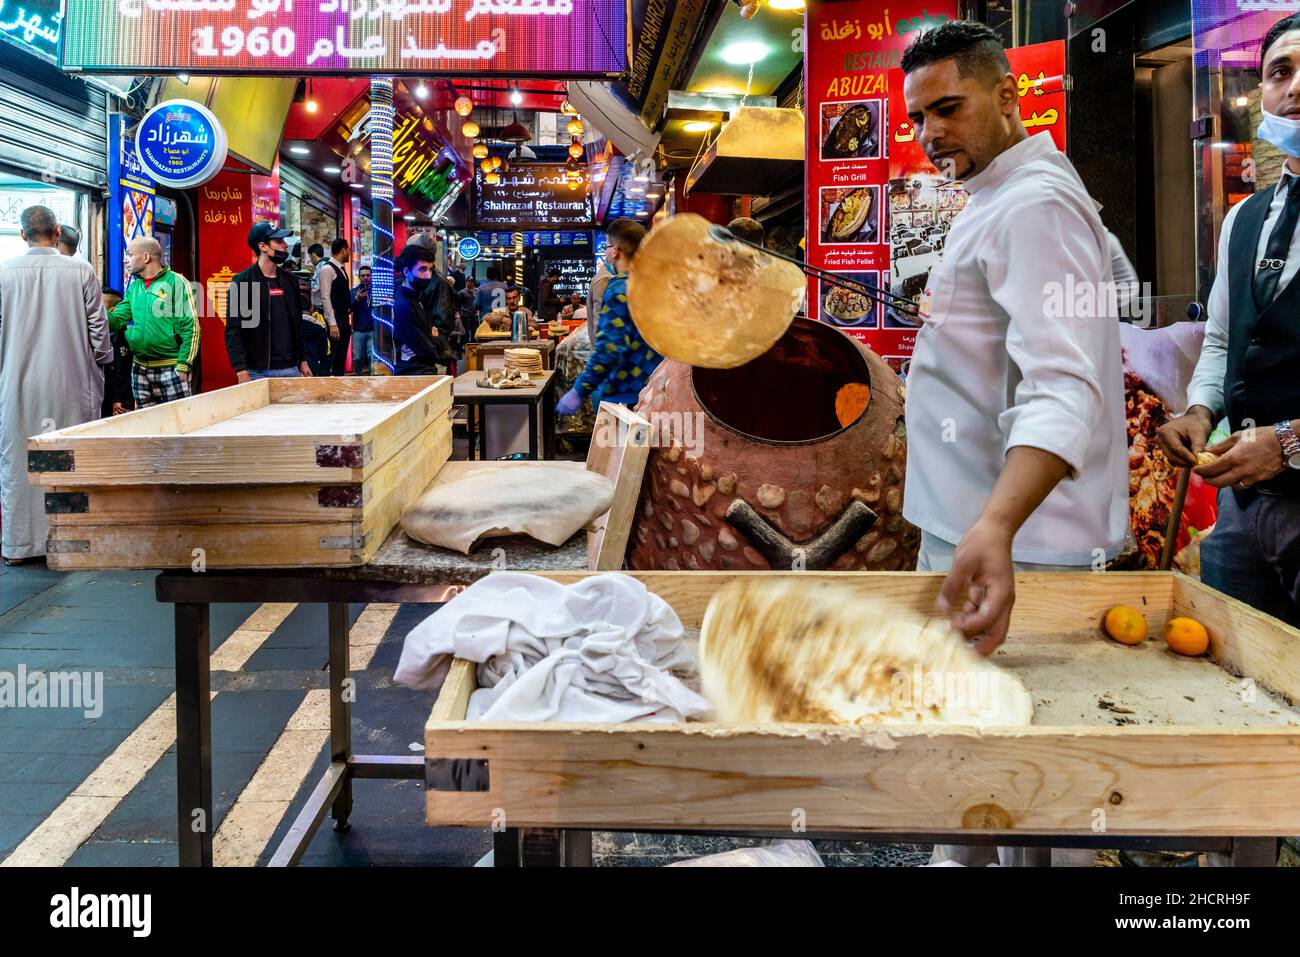 Un jeune homme mettant Un pain plat traditionnel dans un four, Abuzaghleh Restaurant, Downtown Amman, Amman, Jordanie. Banque D'Images